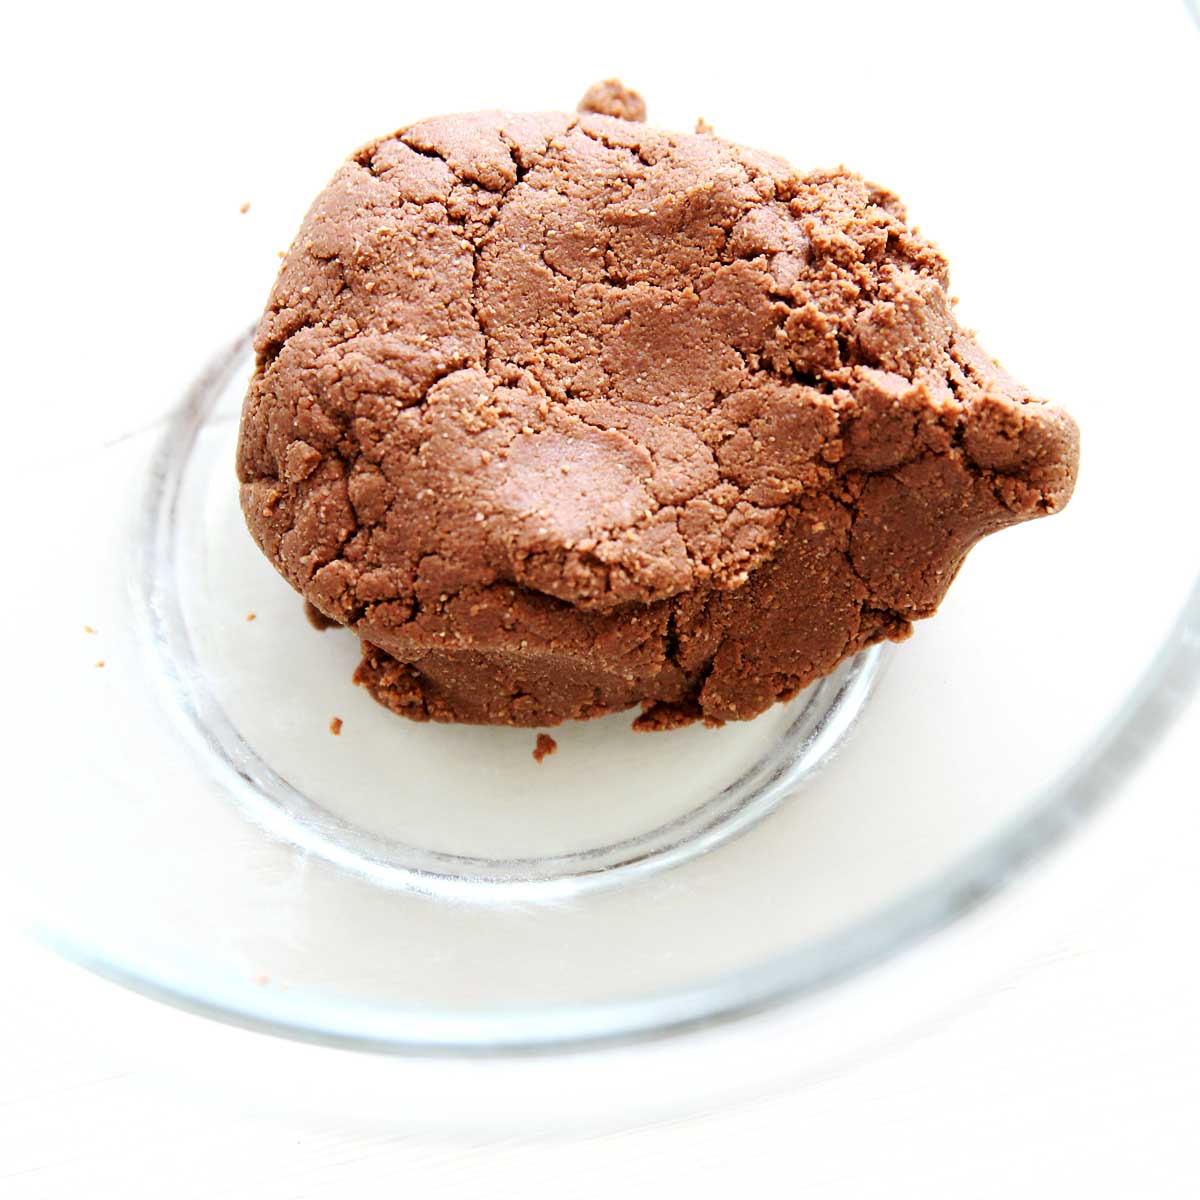 2-Ingredient Nutella Chocolate Mooncakes Recipe - Nutella Chocolate Mooncakes